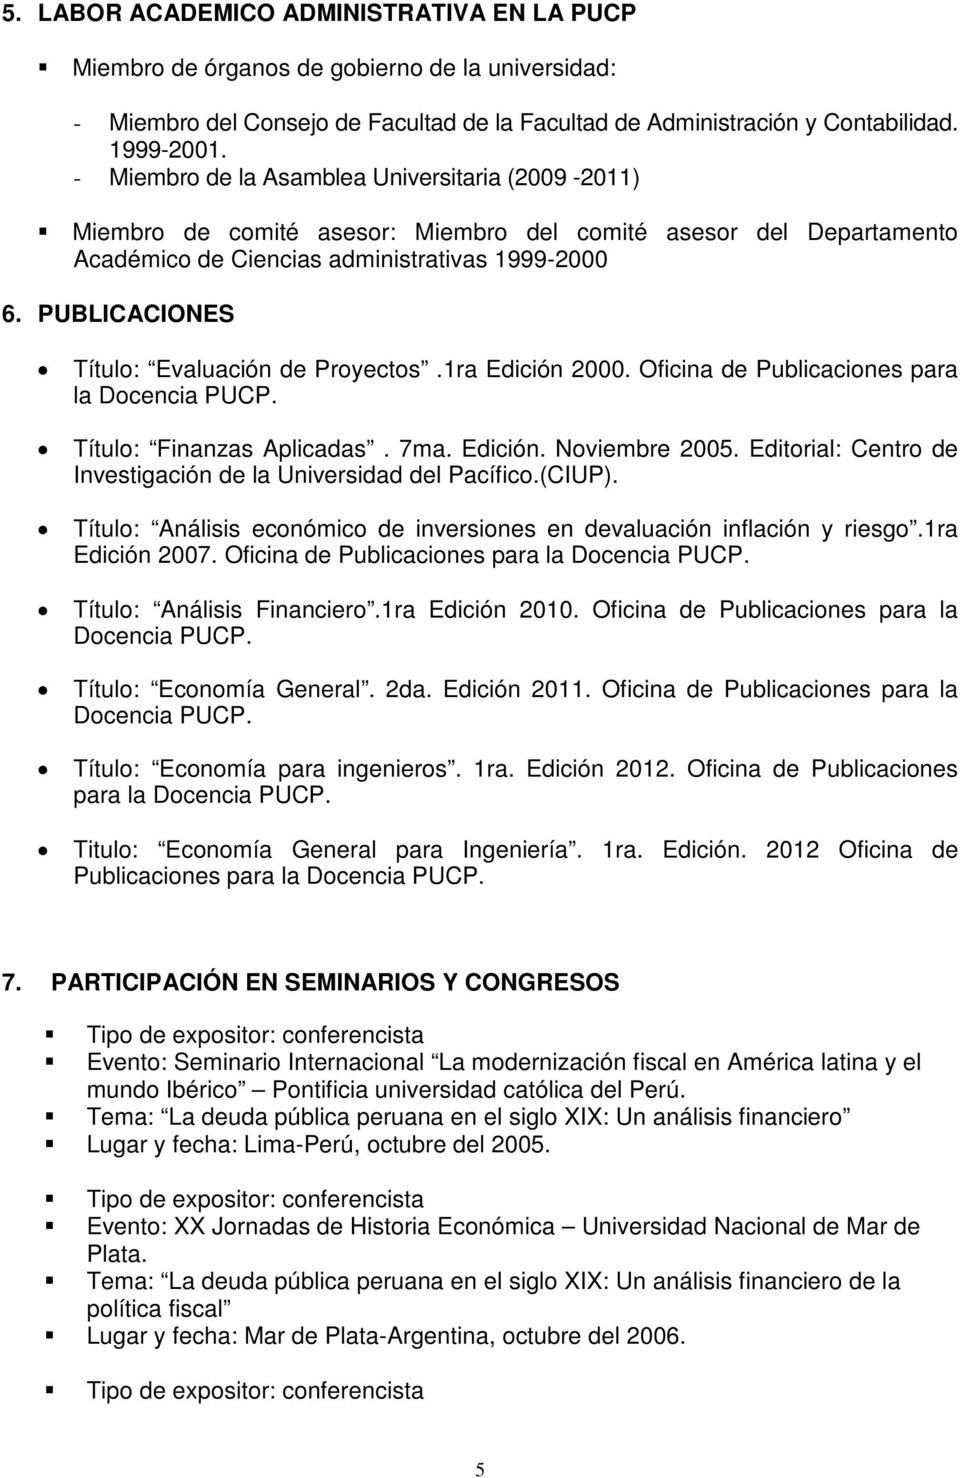 PUBLICACIONES Título: Evaluación de Proyectos.1ra Edición 2000. Oficina de Publicaciones para la Docencia PUCP. Título: Finanzas Aplicadas. 7ma. Edición. Noviembre 2005.